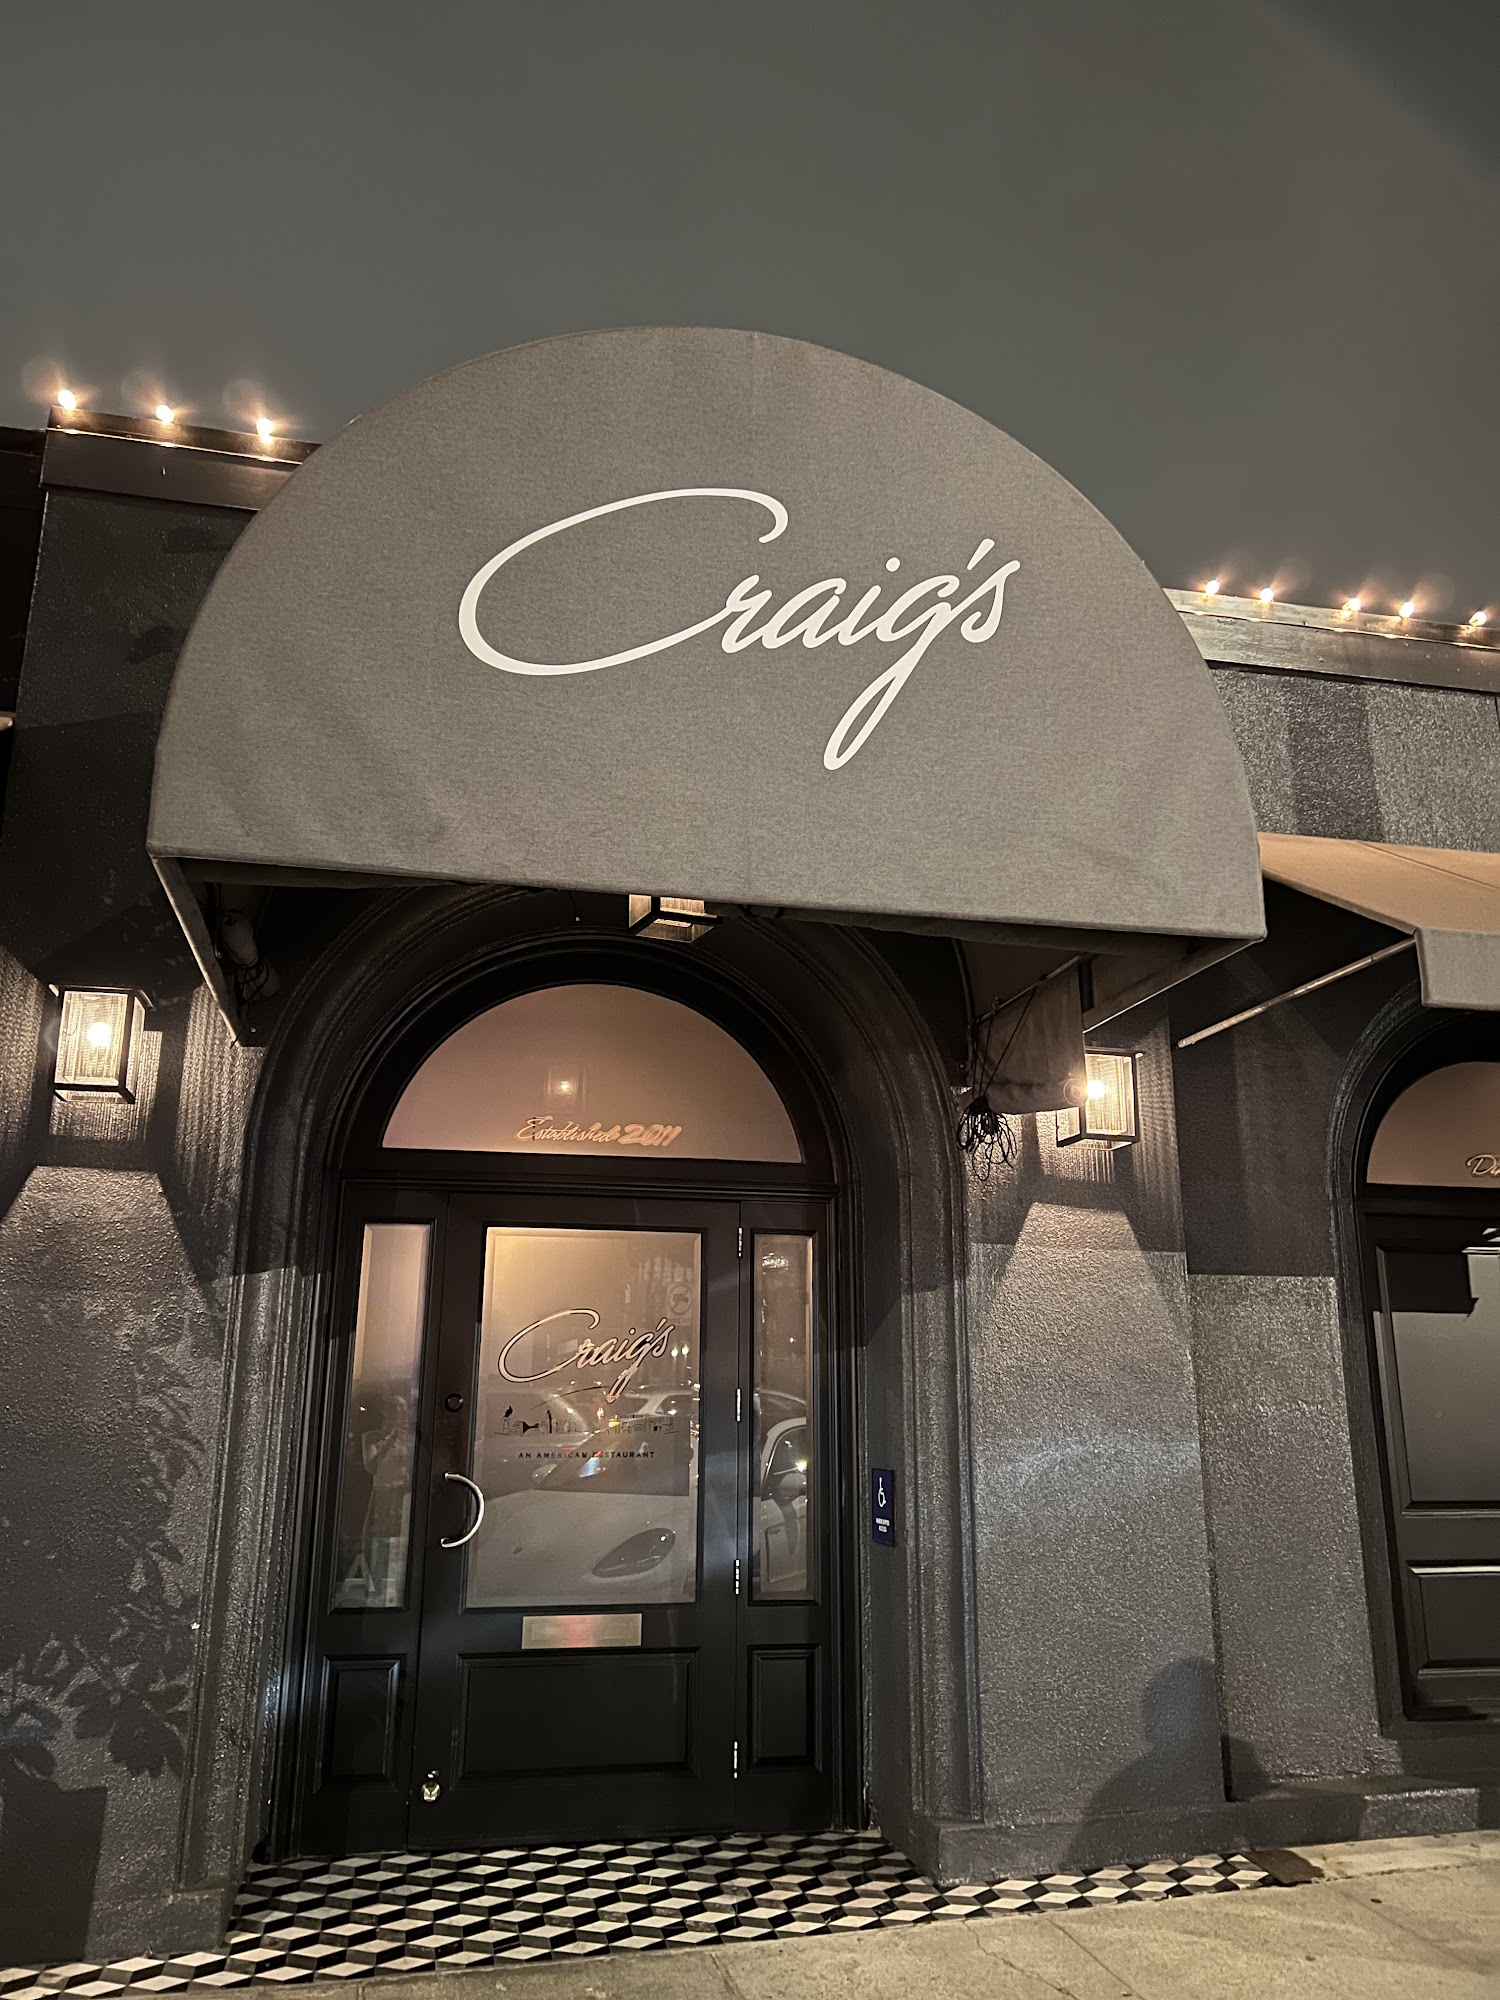 Craig's